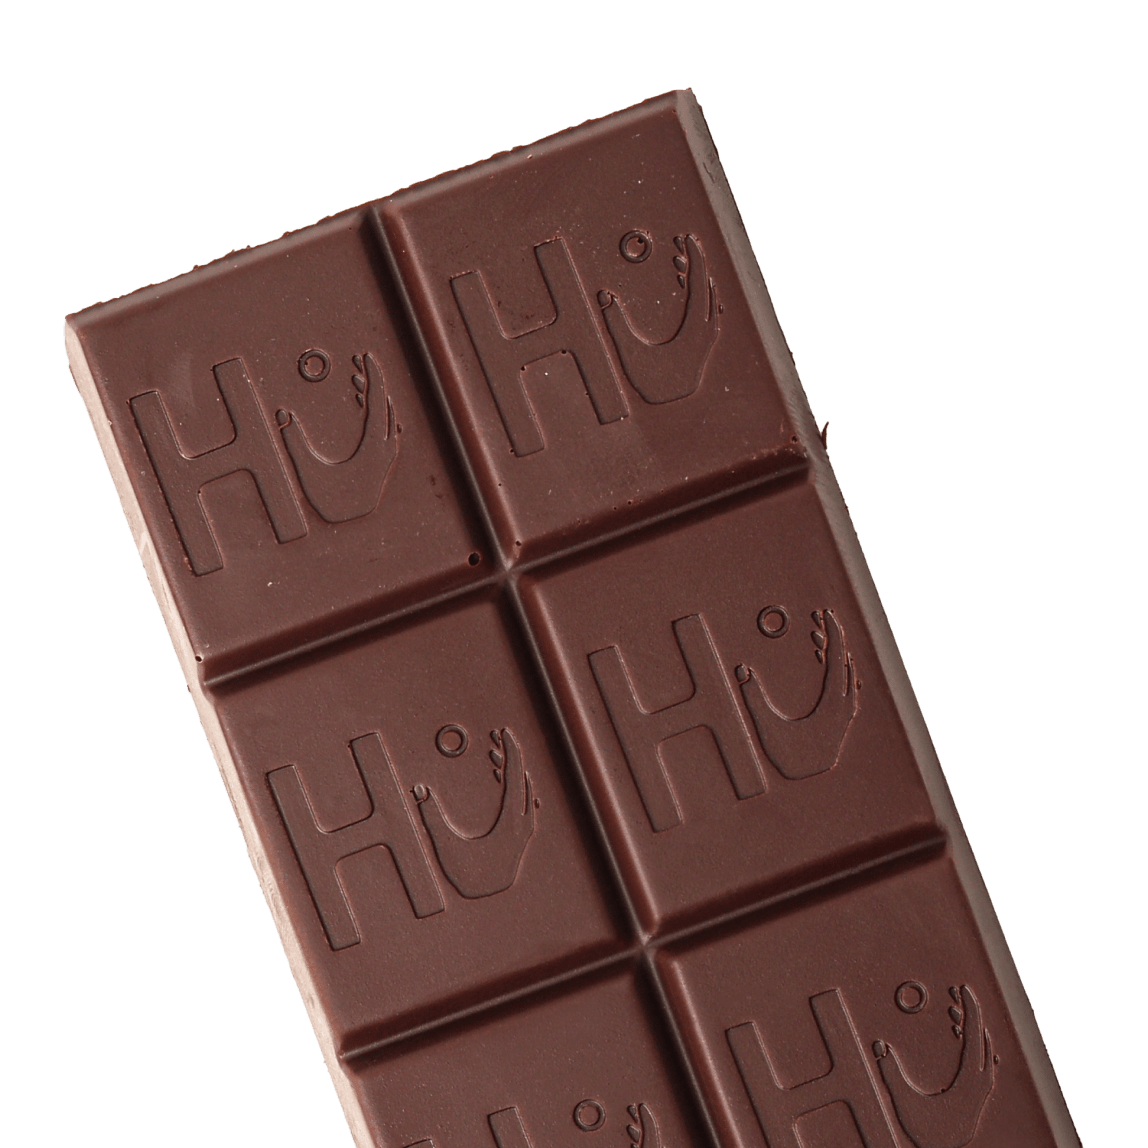 Dark Chocolate Variety Pack-image-1